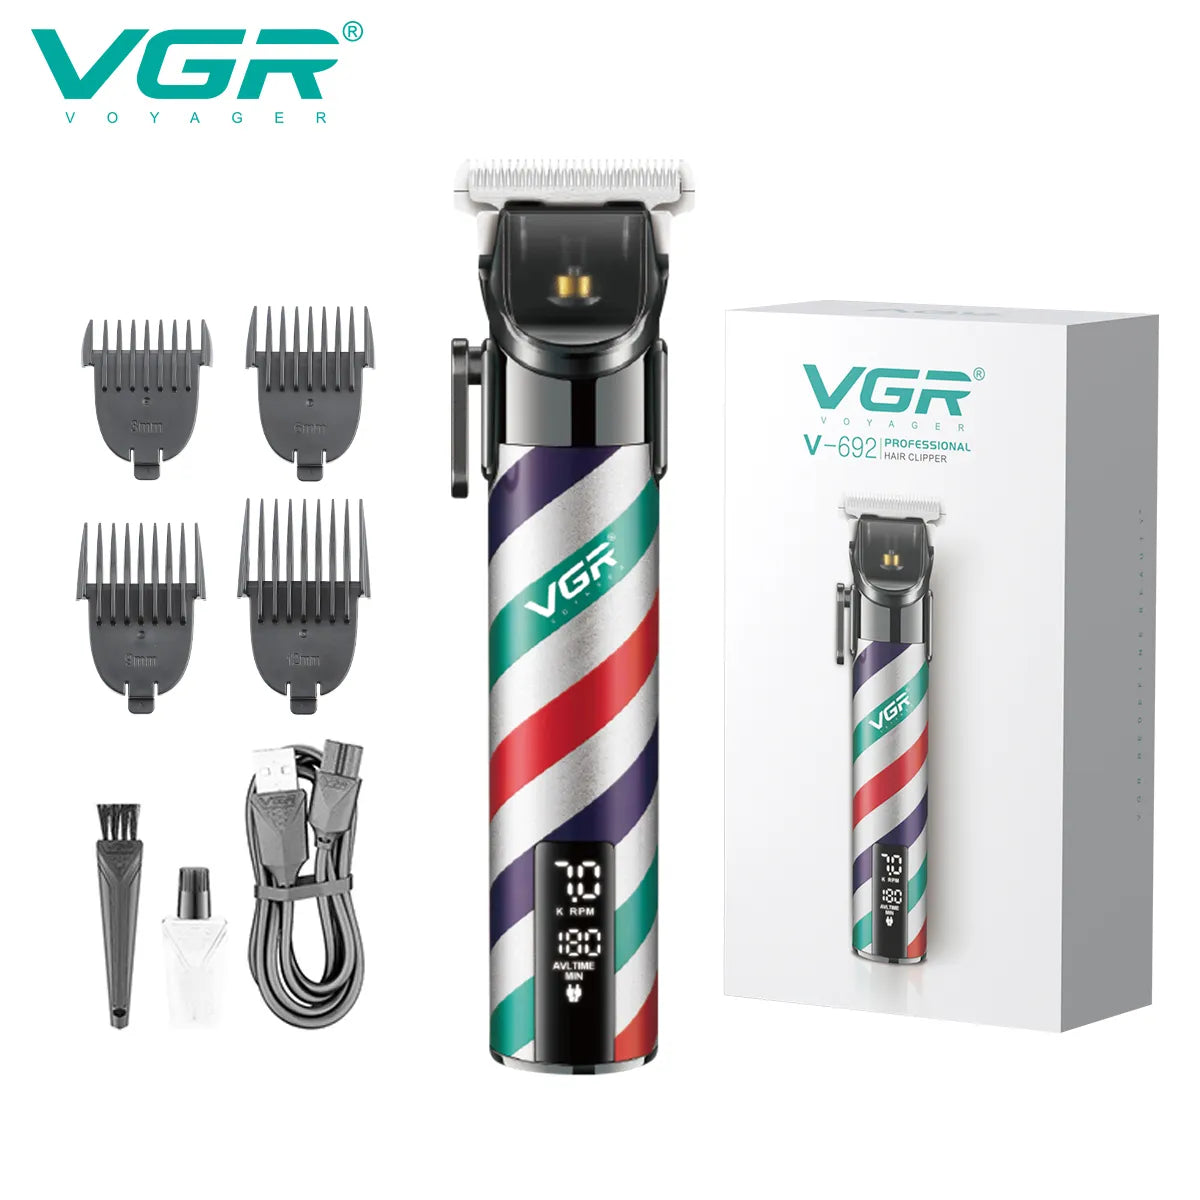 VGR, VGRindia, VGRofficial, VGR V-692